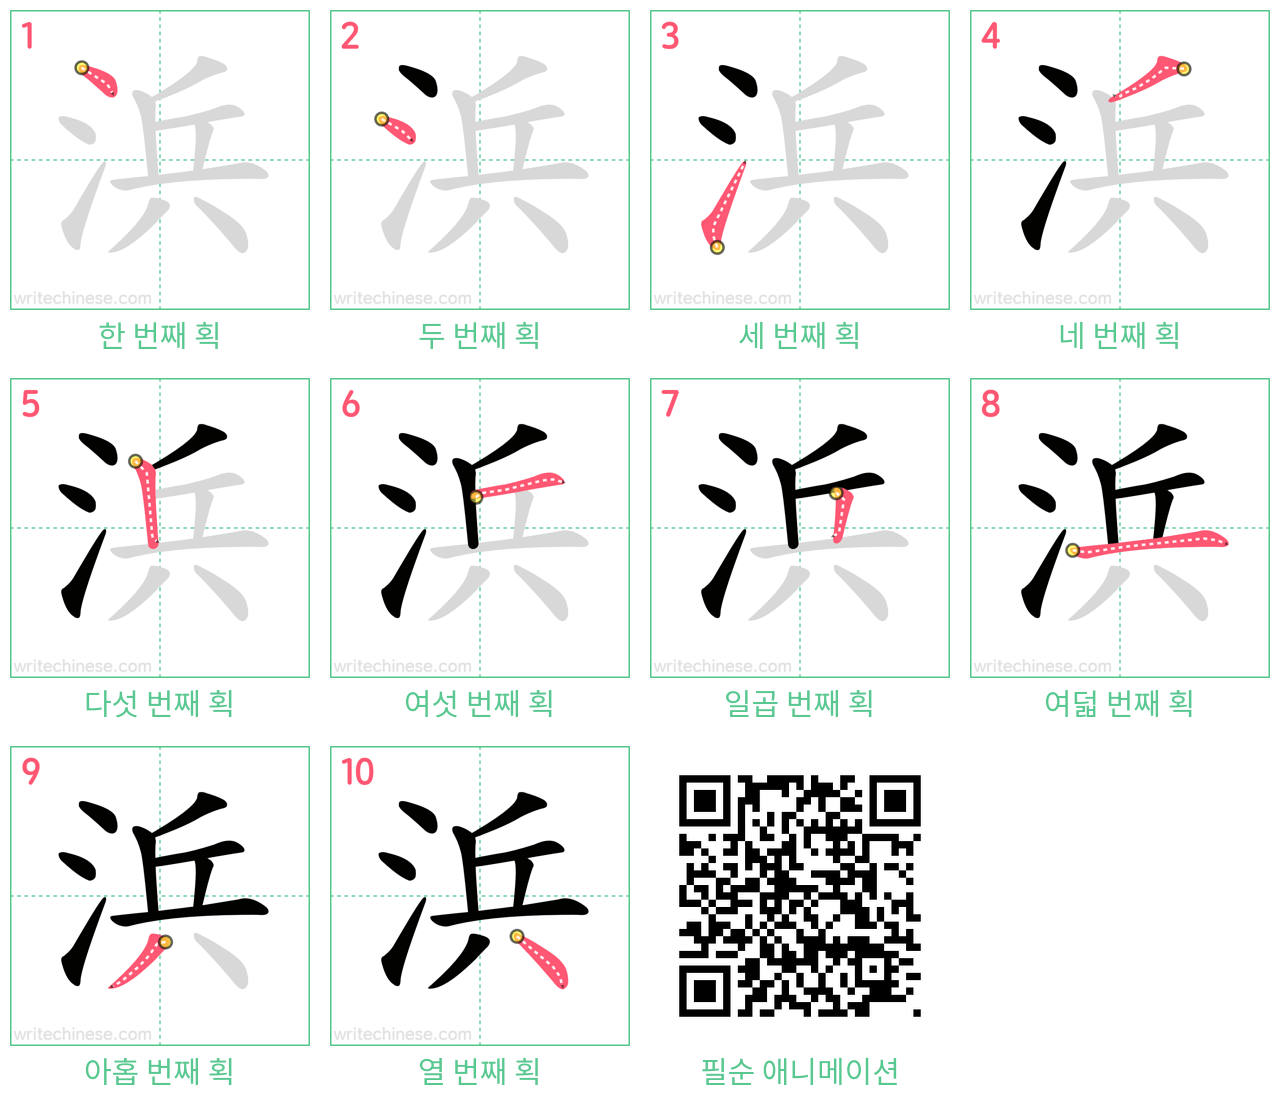 浜 step-by-step stroke order diagrams